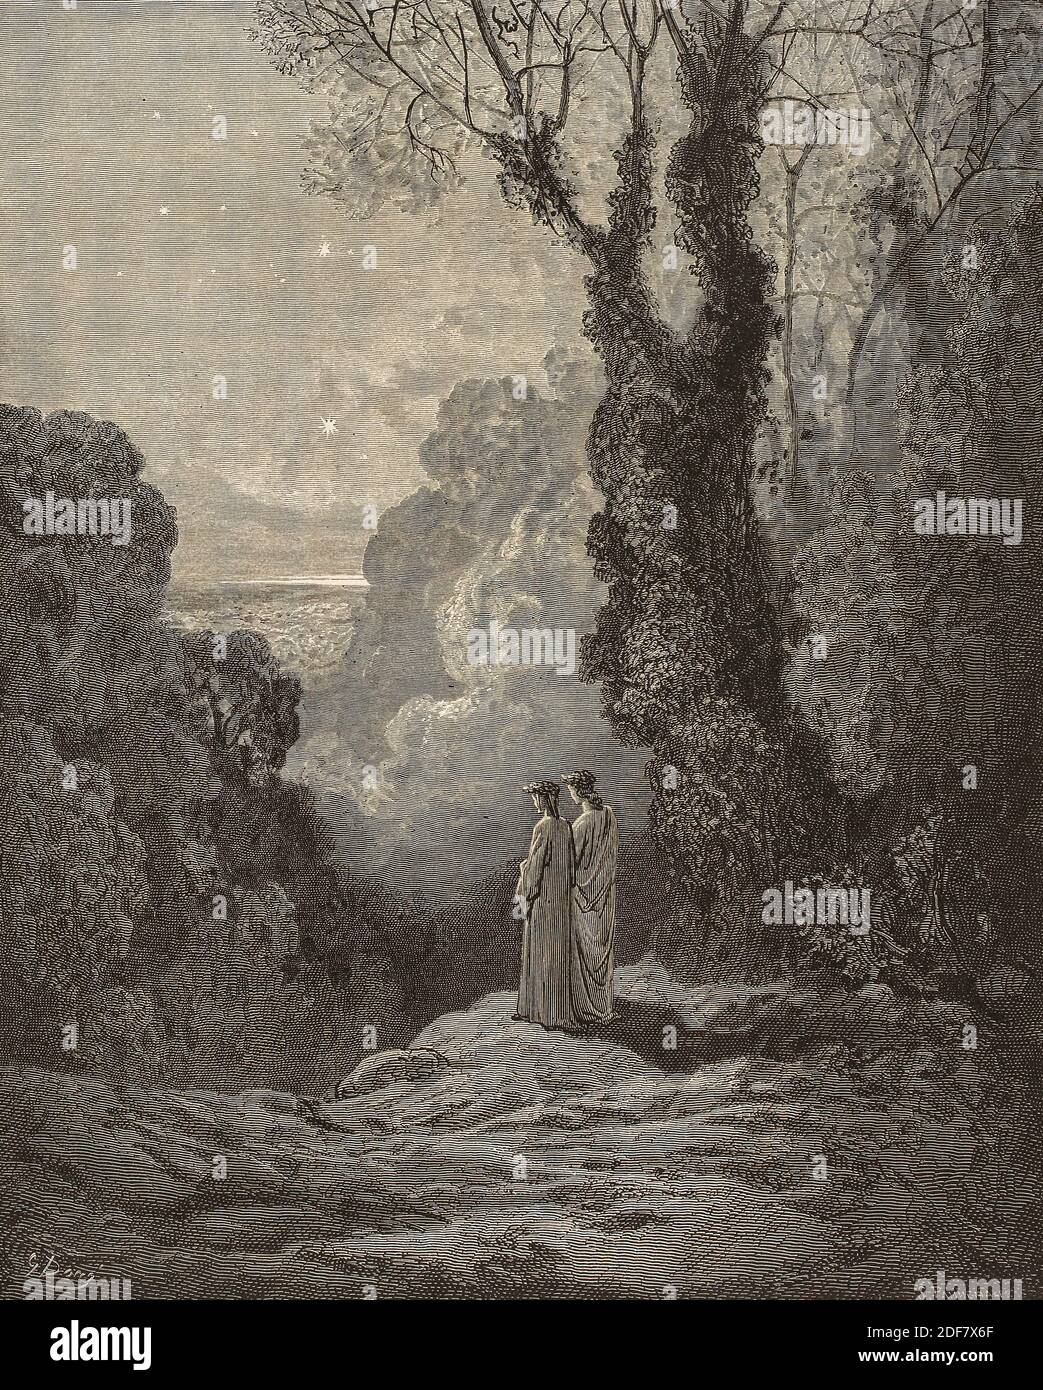 Dante - Divina Commedia - Purgatorio - Ilustración de Gustave Dorè - Canto I - Dante y Virgilio Foto de stock